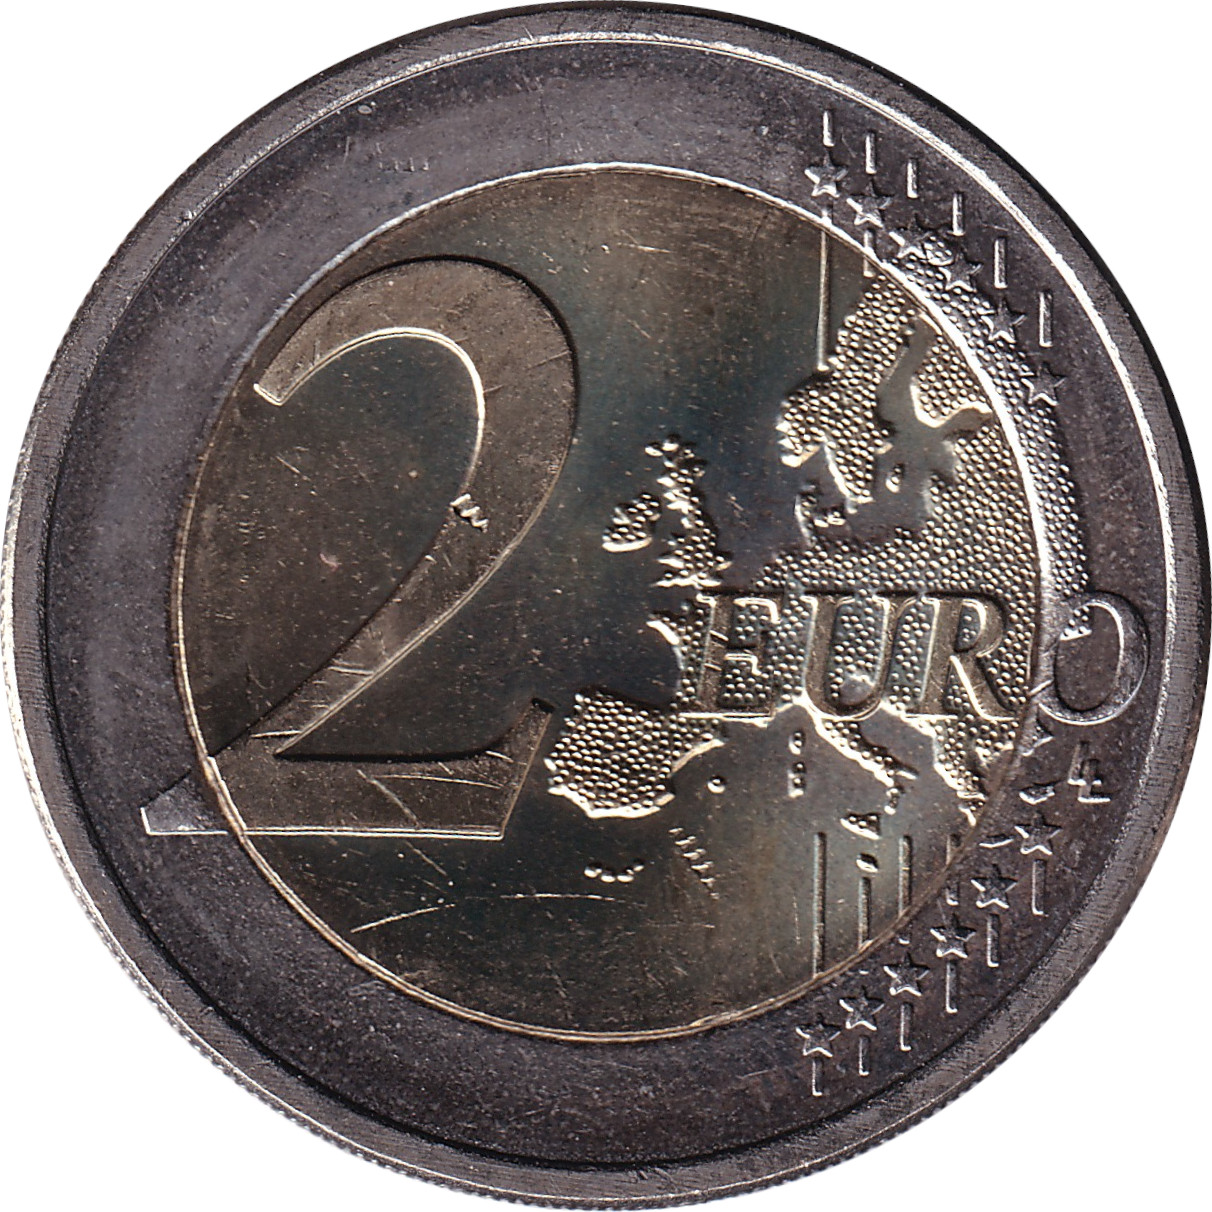 2 euro - Abdication de Béatrix